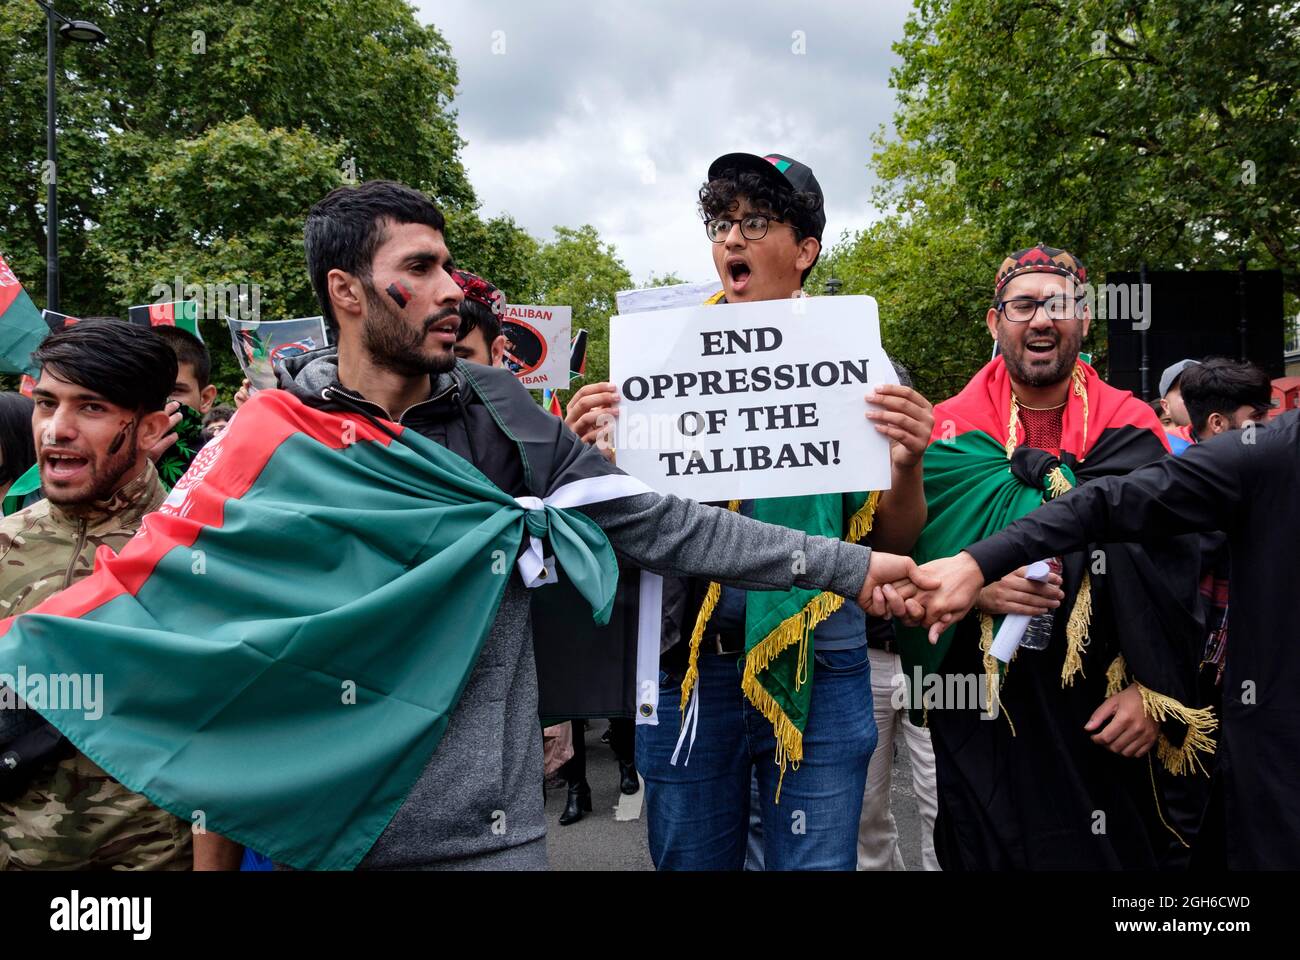 Los afganos anti-talibanes marcharon por Londres traicionados por la retirada de los EE.UU. Y el Reino Unido de Afganistán, dejando a los talibanes a cargo. Poner fin a la guerra de poderes, detener los asesinatos y sancionar a Pakistán. 28.08.2021 Foto de stock